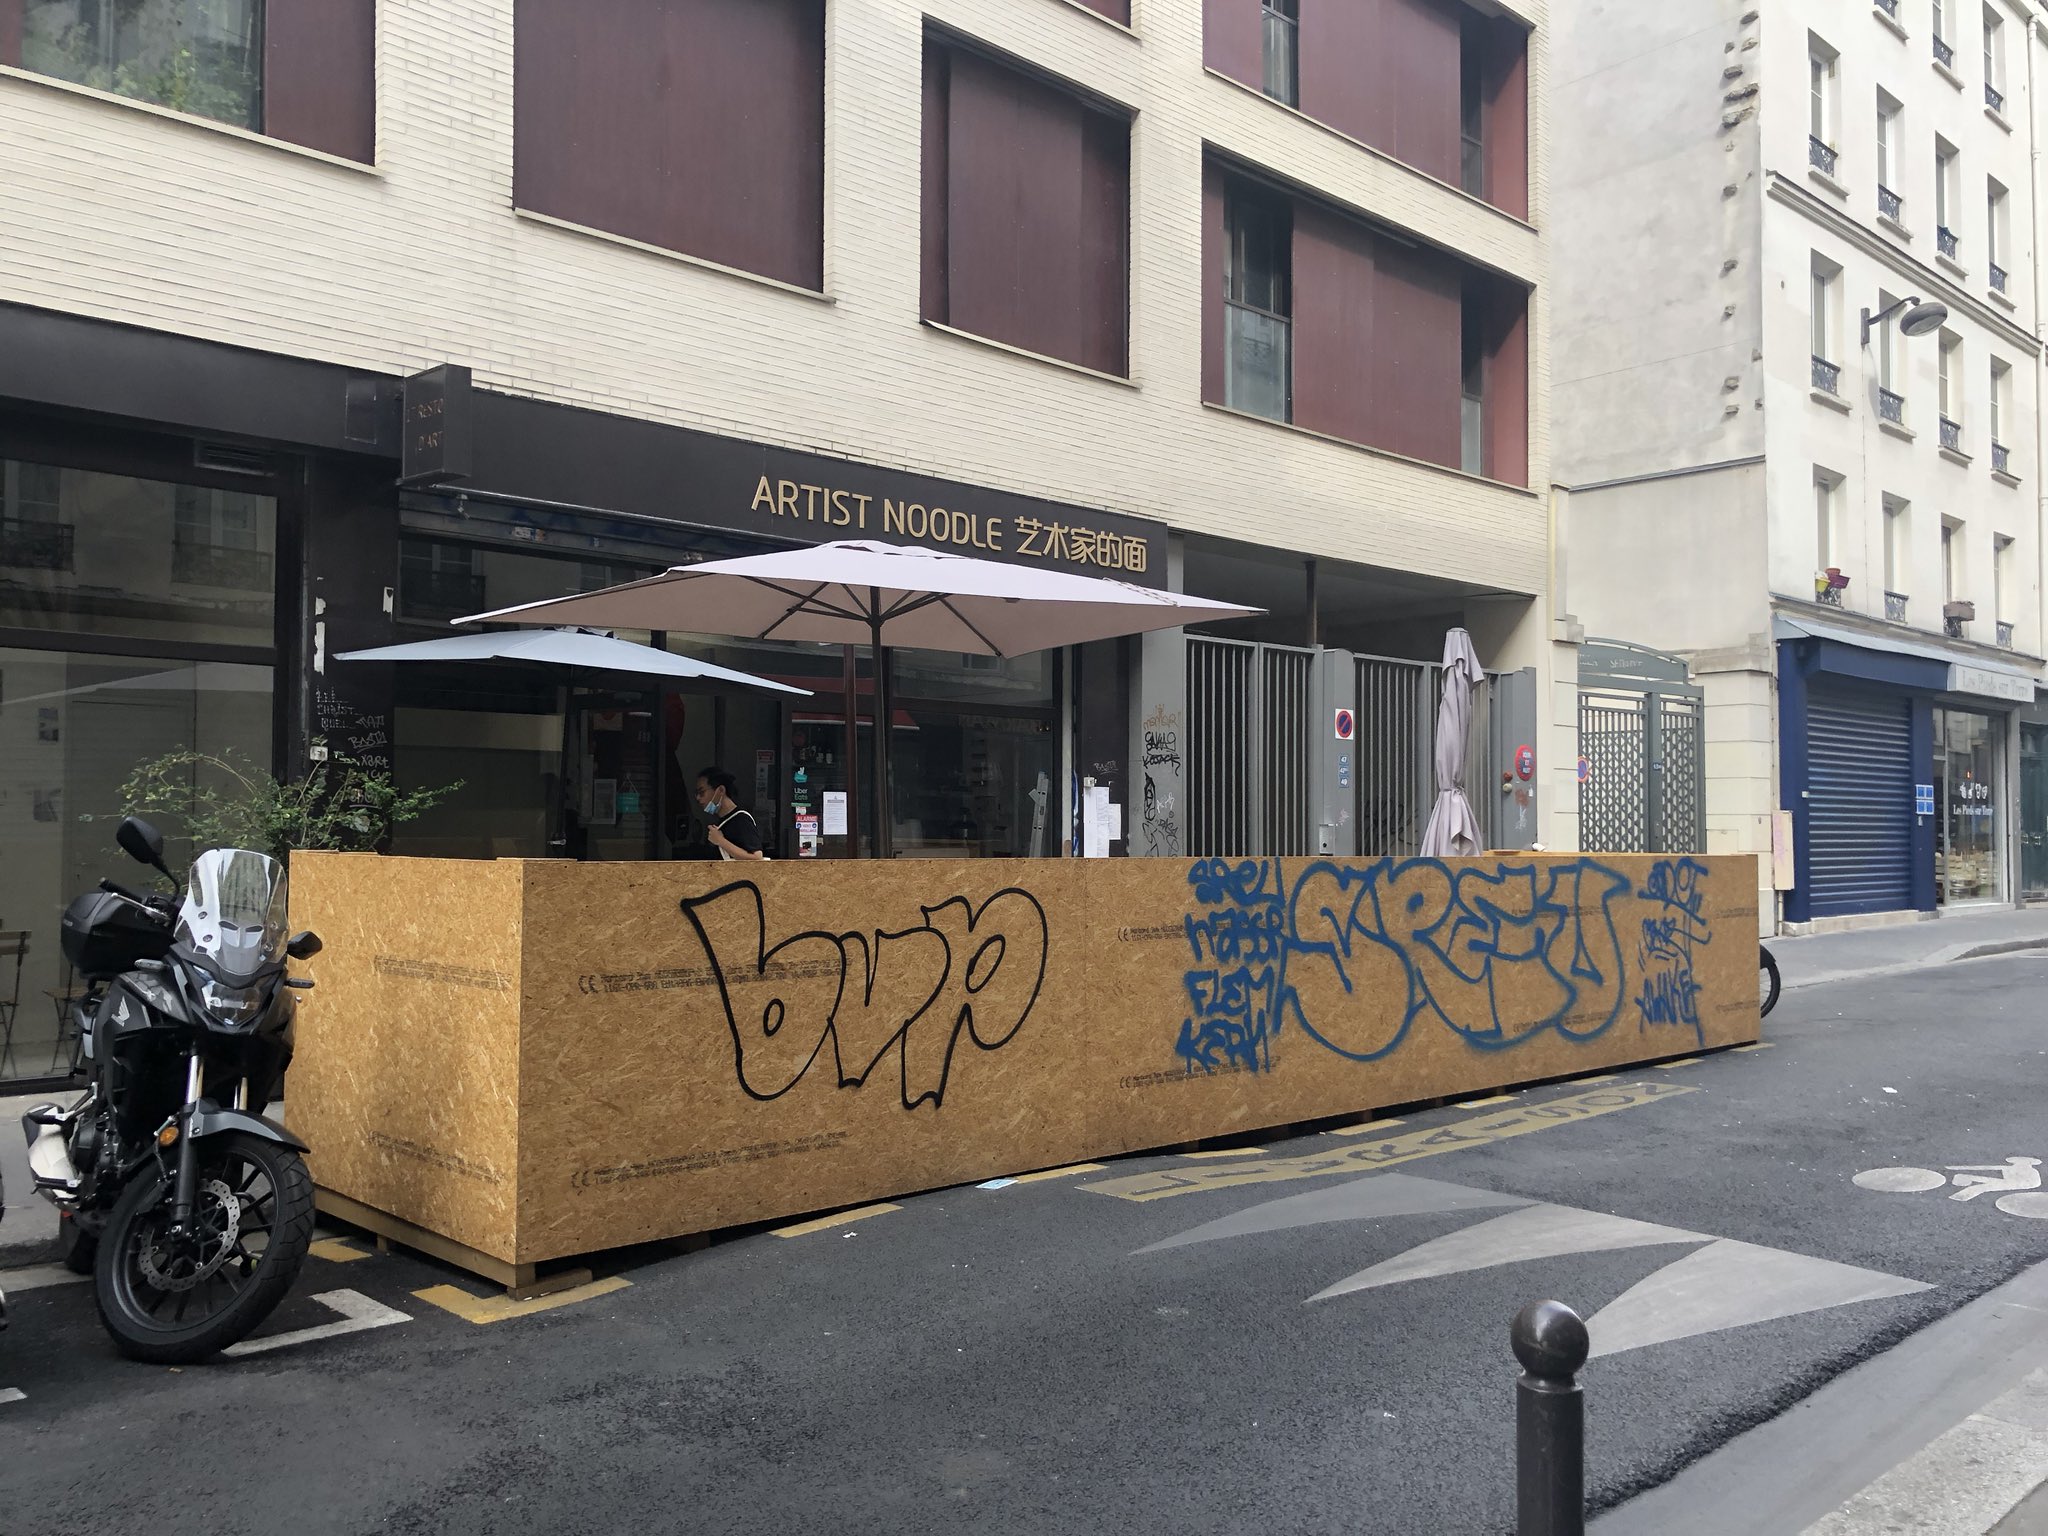 Французские рестораны бастуют против карантина. Фото: Twitter / @Shapotchka